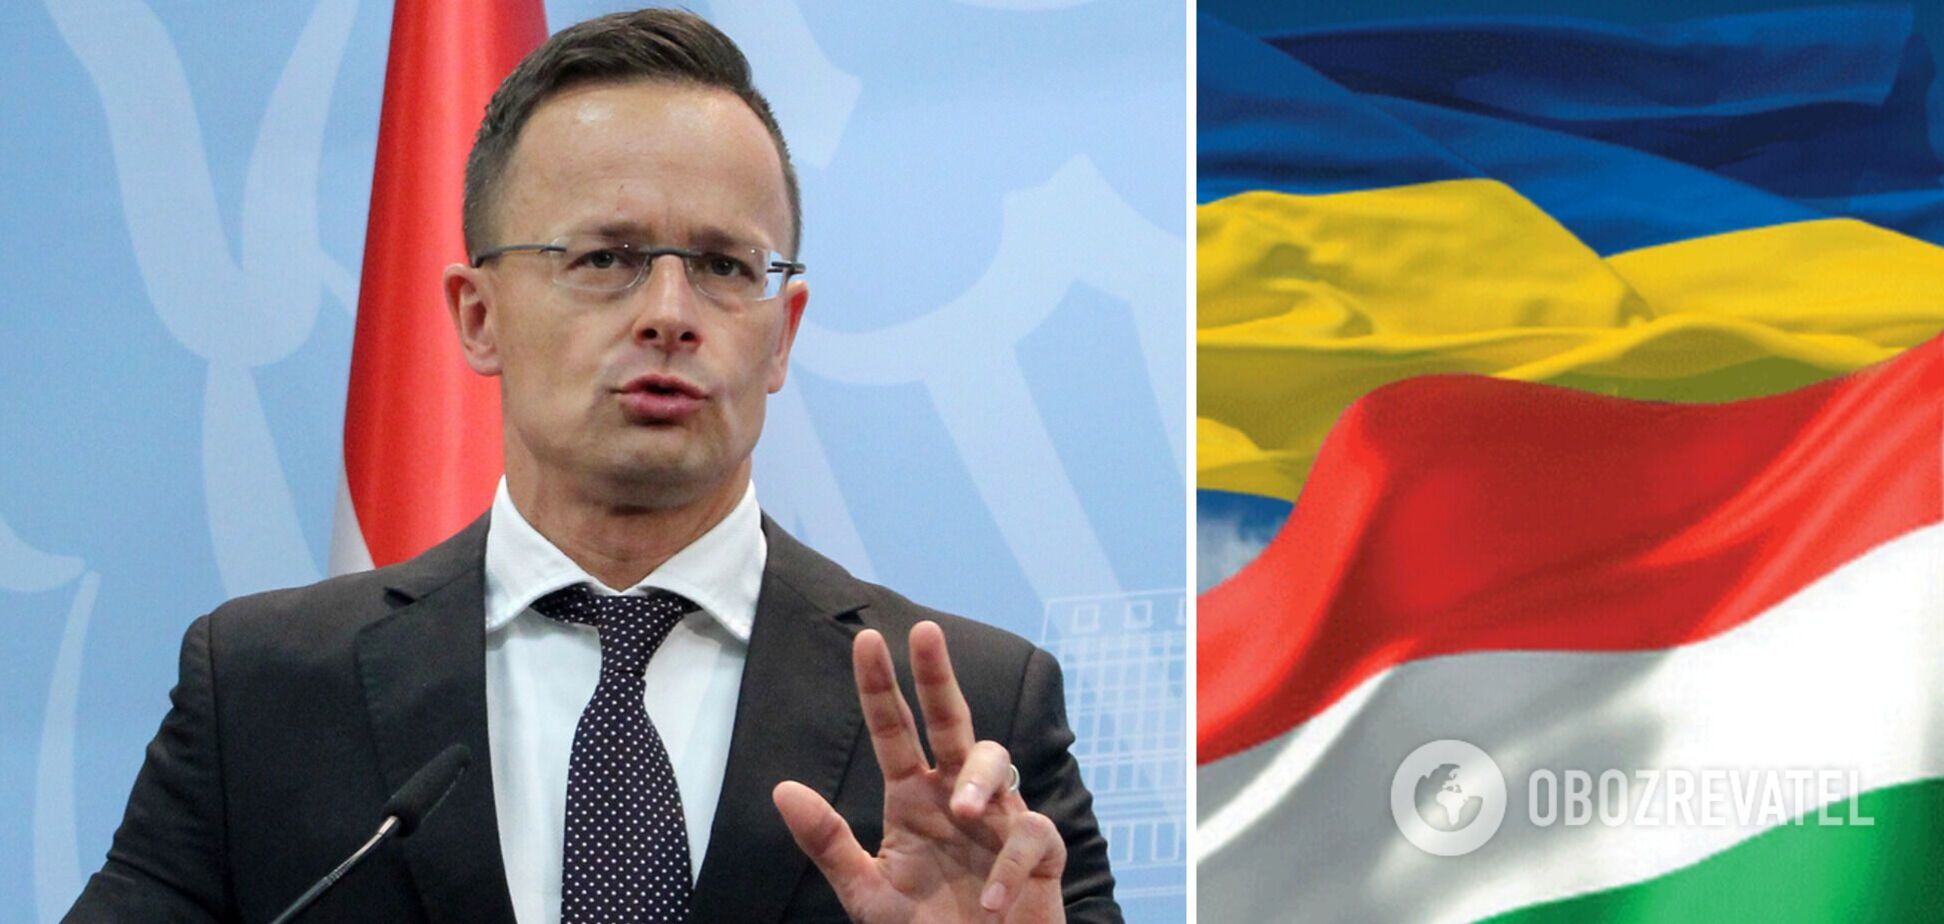 Сіярто викликав посла України через критичні заяви щодо позиції Будапешта щодо війни